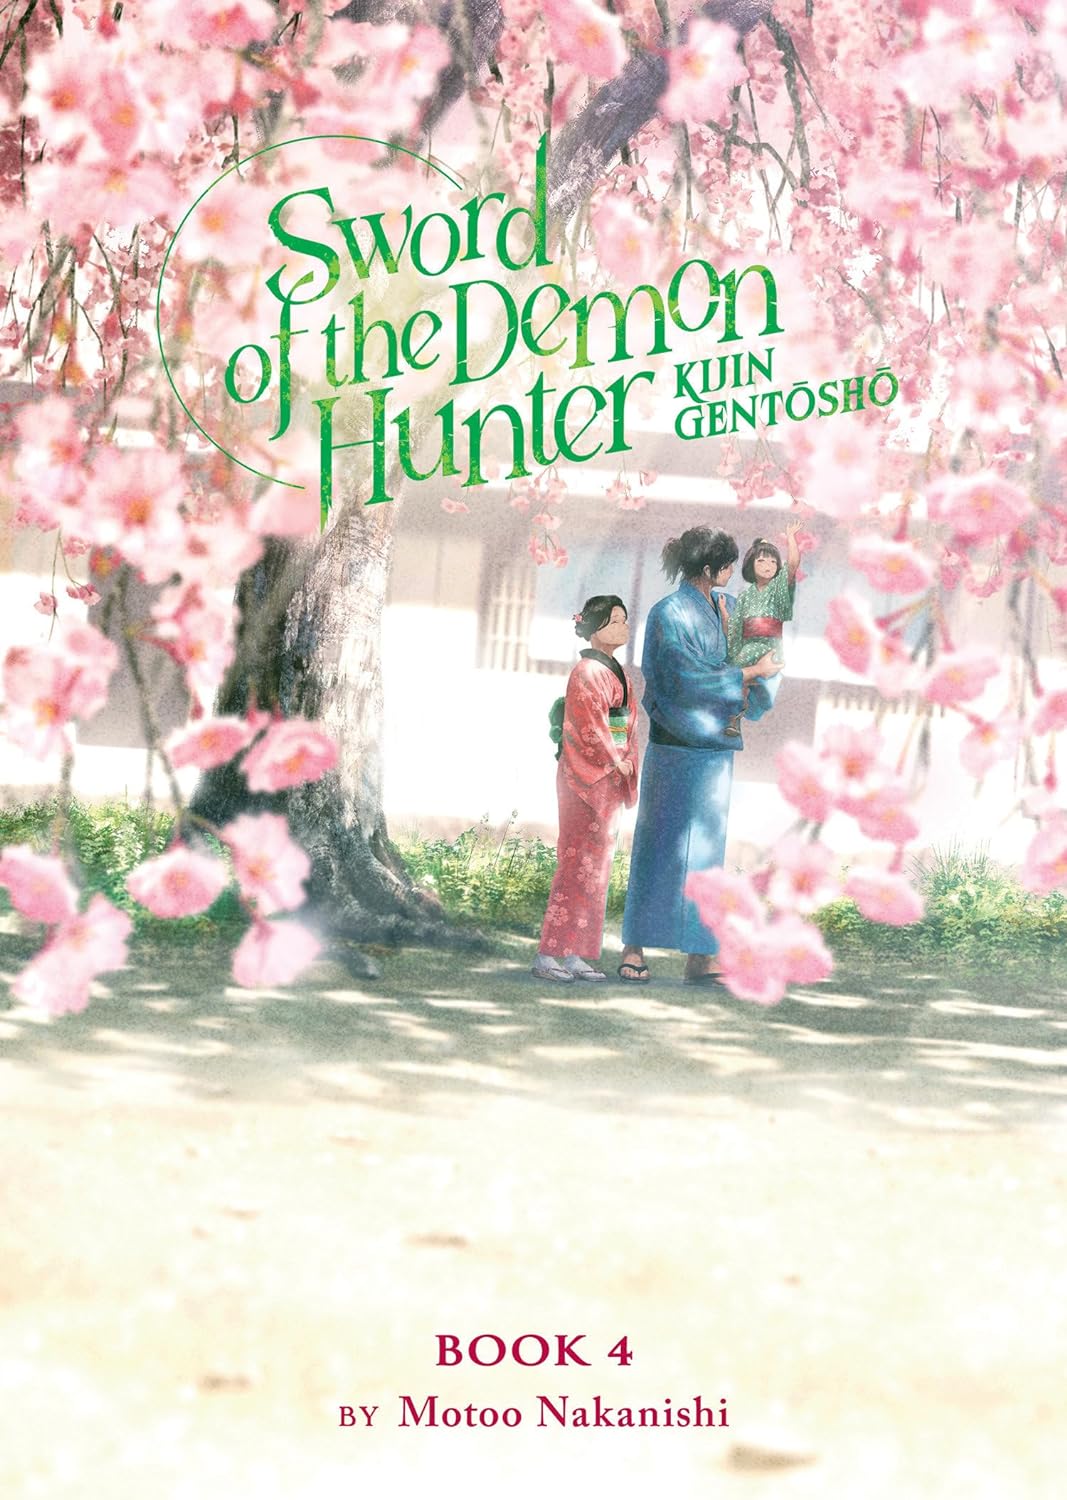 Sword of the Demon Hunter: Kijin Gentosho (Light Novel) Vol. 04